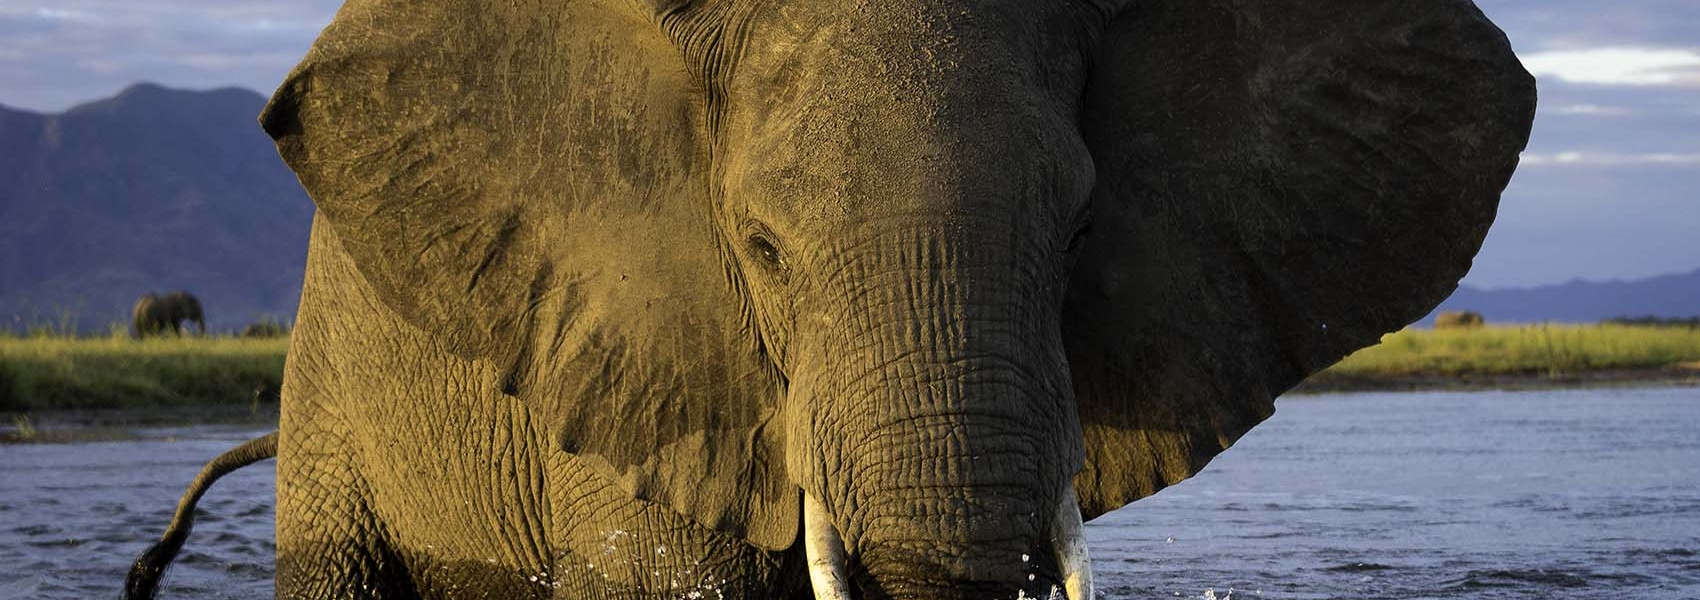 African Zimbabwe Safari elephant